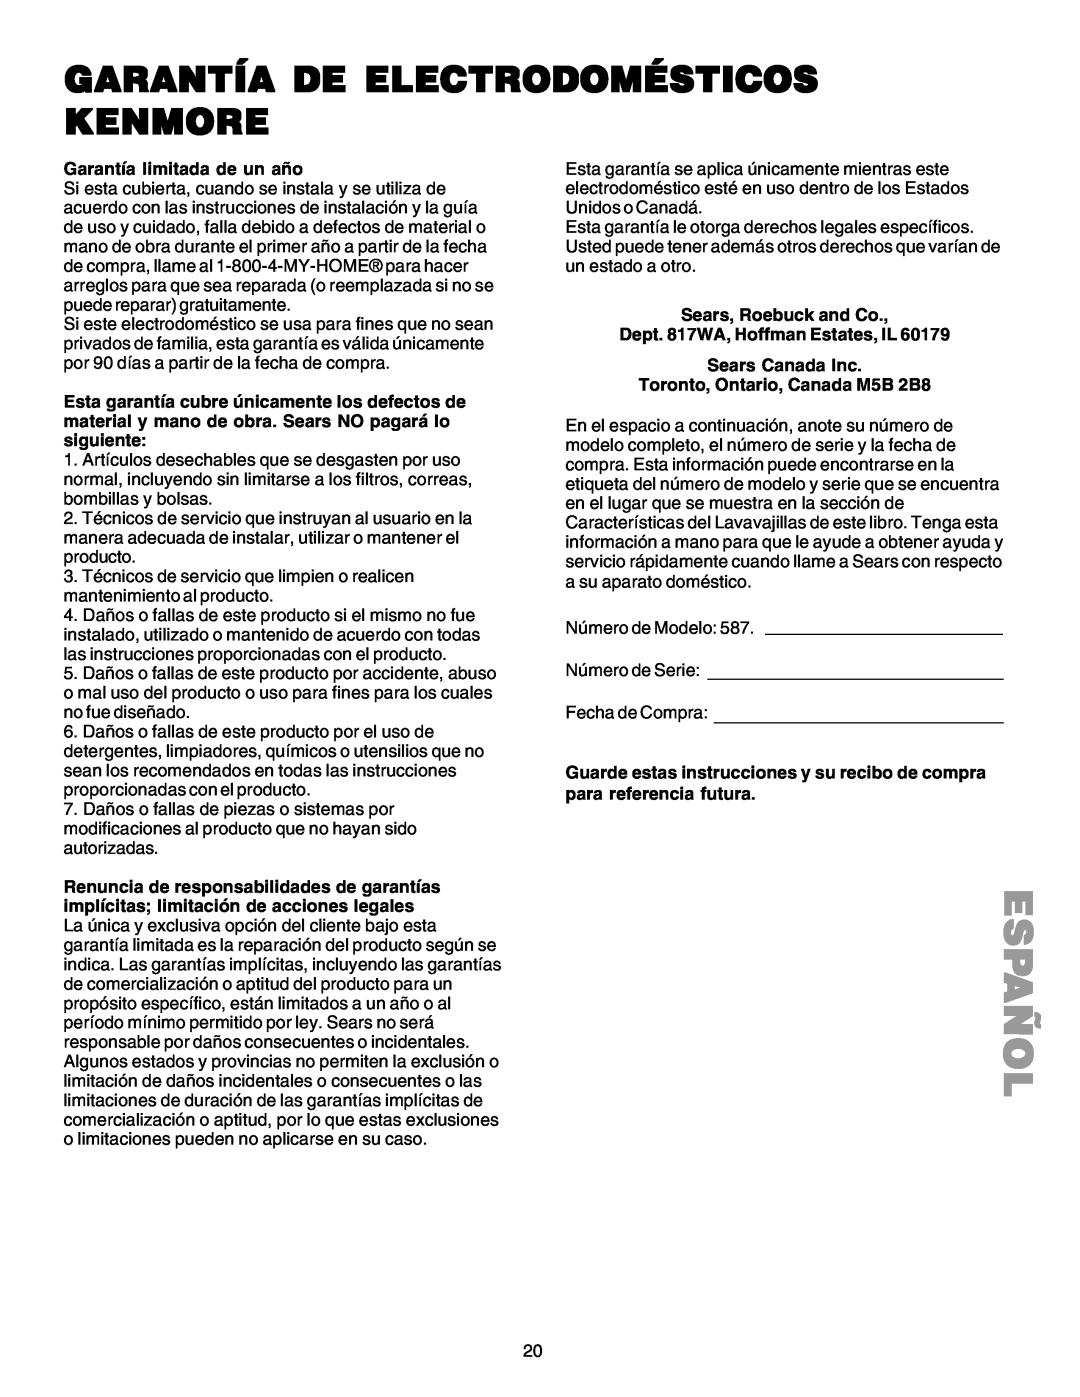 Kenmore 587.1523 manual Garantía De Electrodomésticos Kenmore, Español 